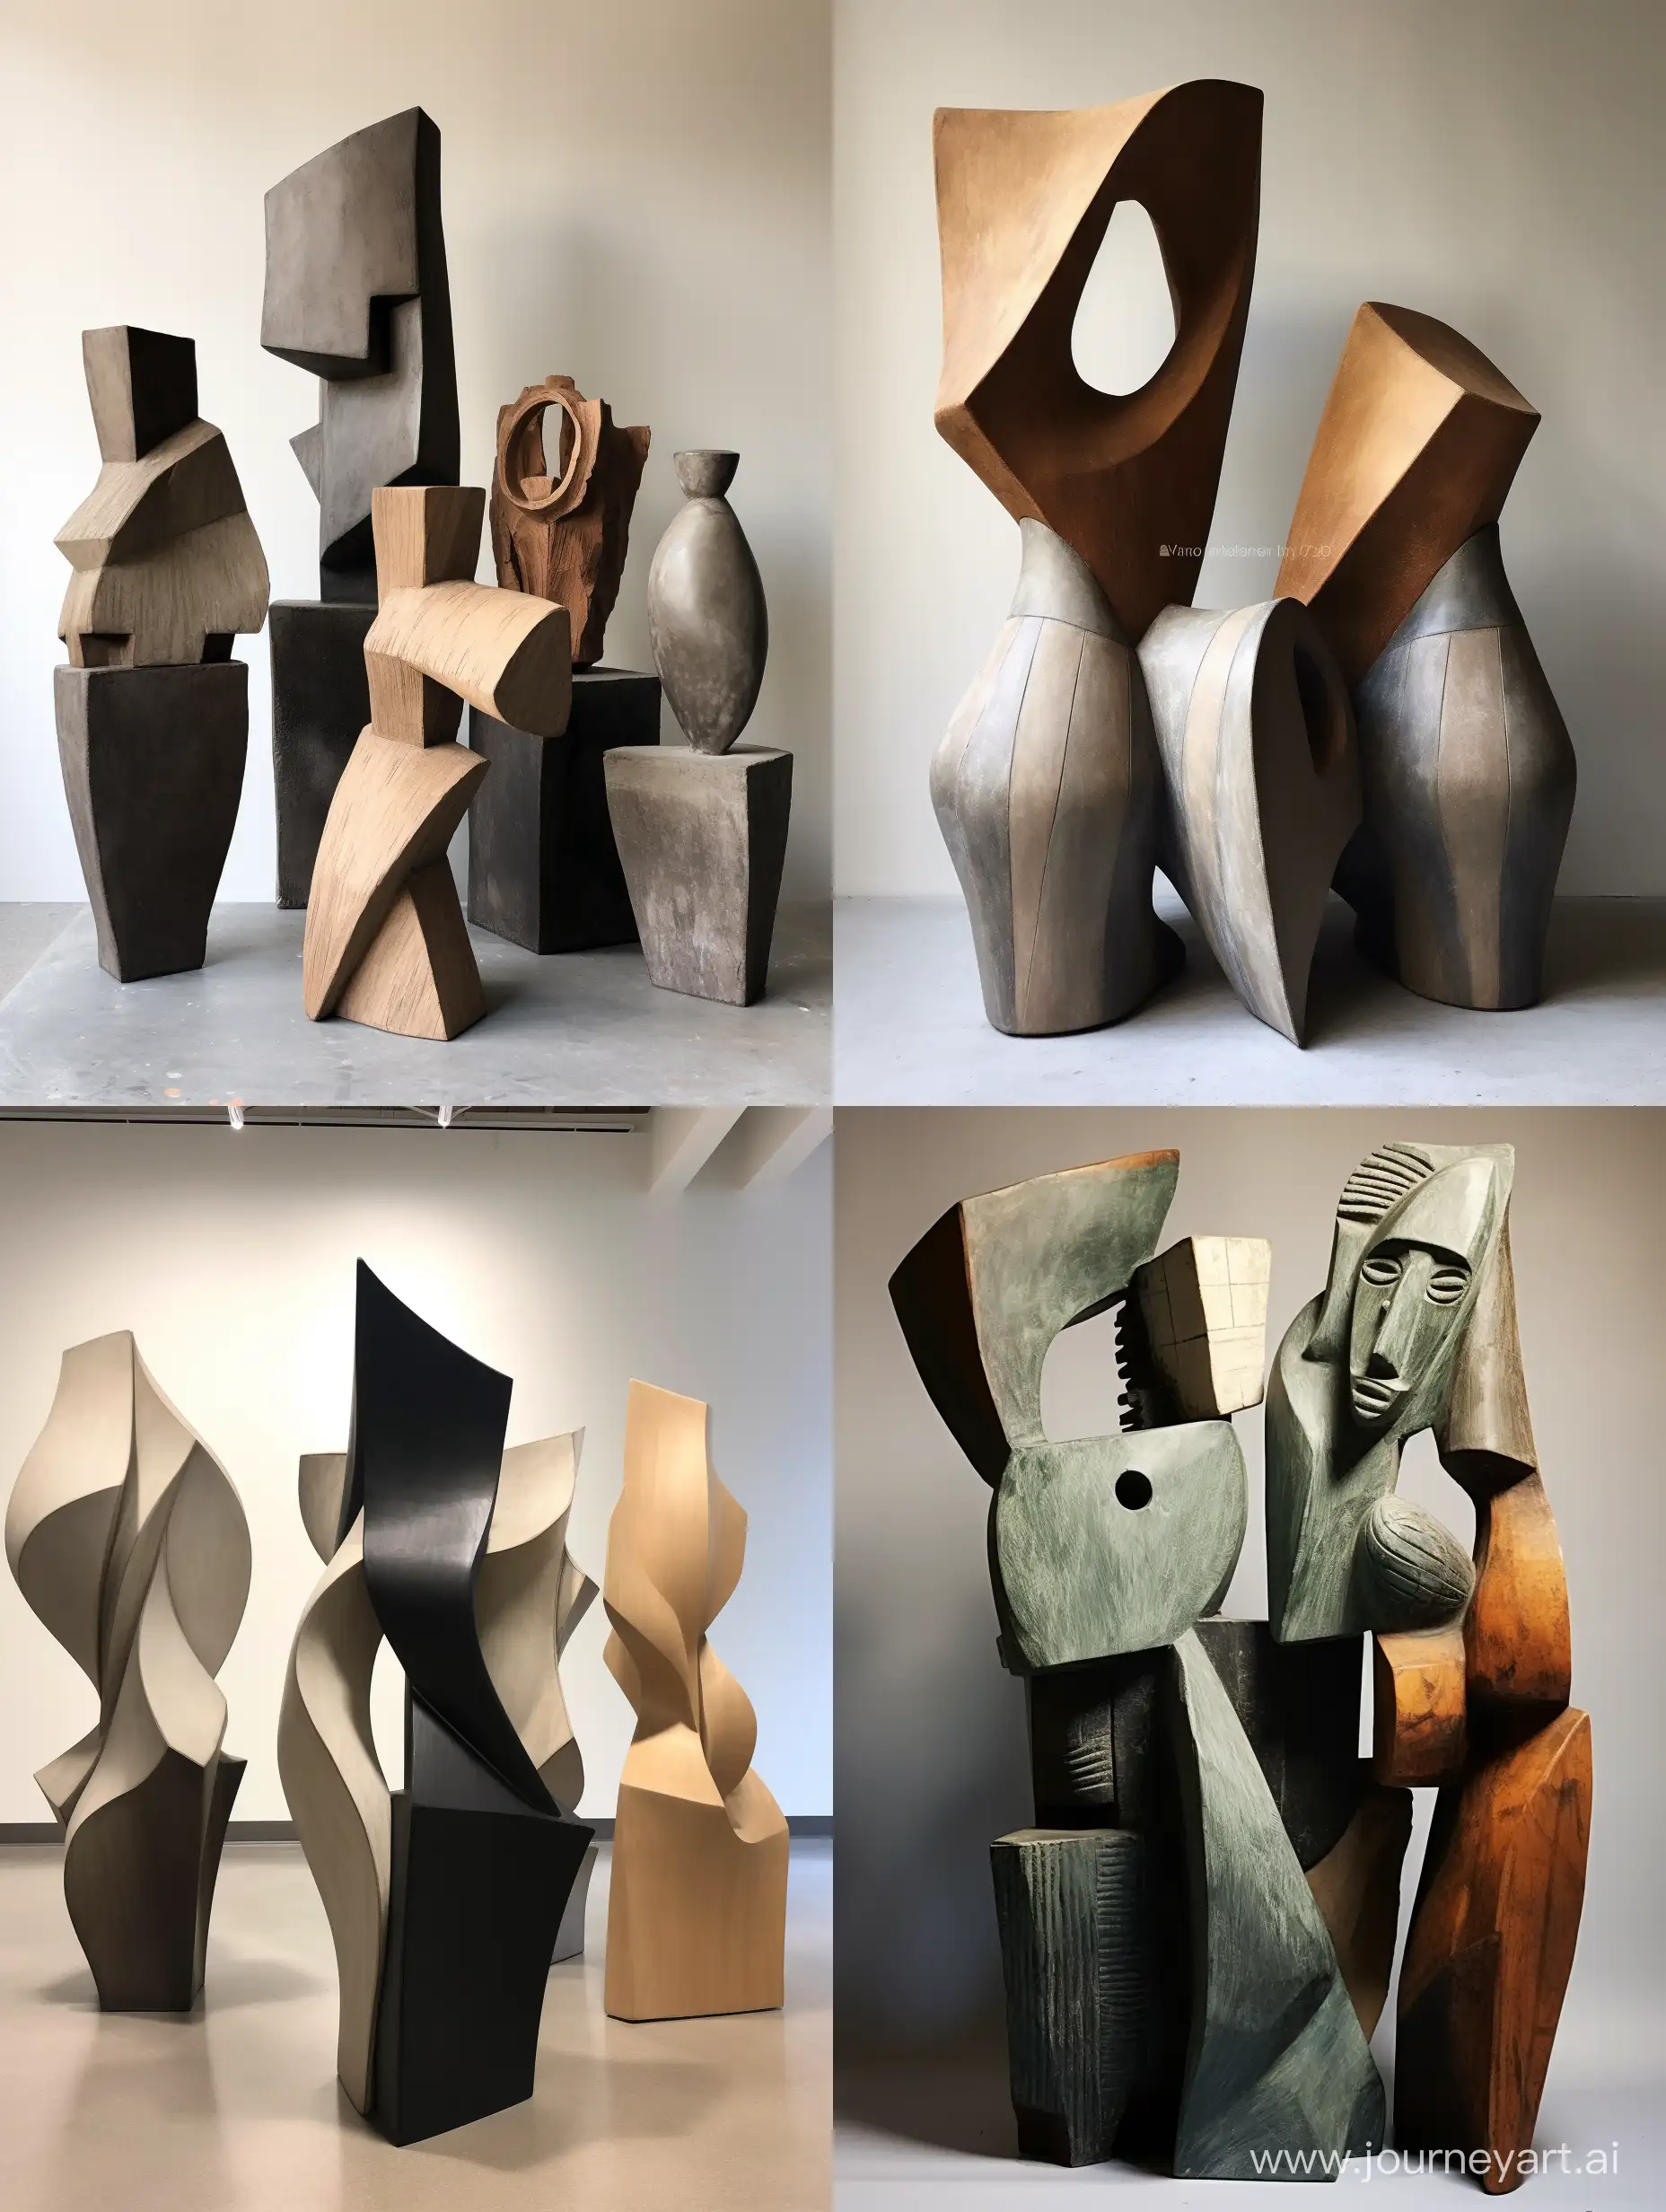 Абстрактная геометрическая скульптура керамика, абстрактные формы, объëмные детали, объëмные элементы, приглушëнные оттенки, в стиле 60-х, острые углы, гигантизм, монументализм